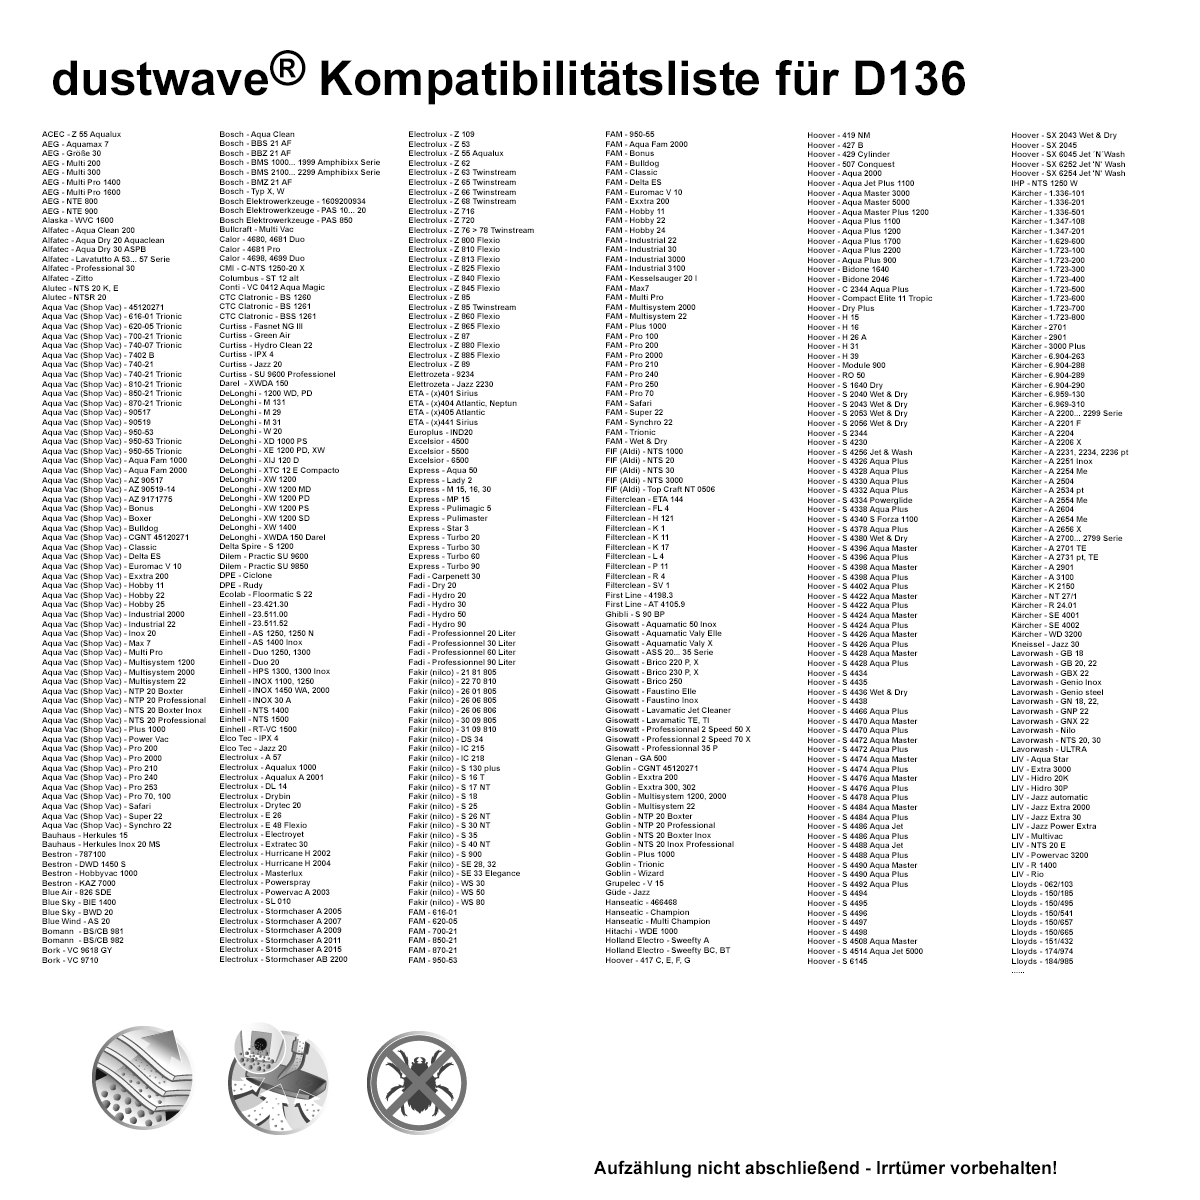 10x dustwave® Staubsaugerbeutel (ca. 20 Liter) für Kärcher 2201, 2204, 6.959-130 / Markenfilterbeutel - Made in Germany